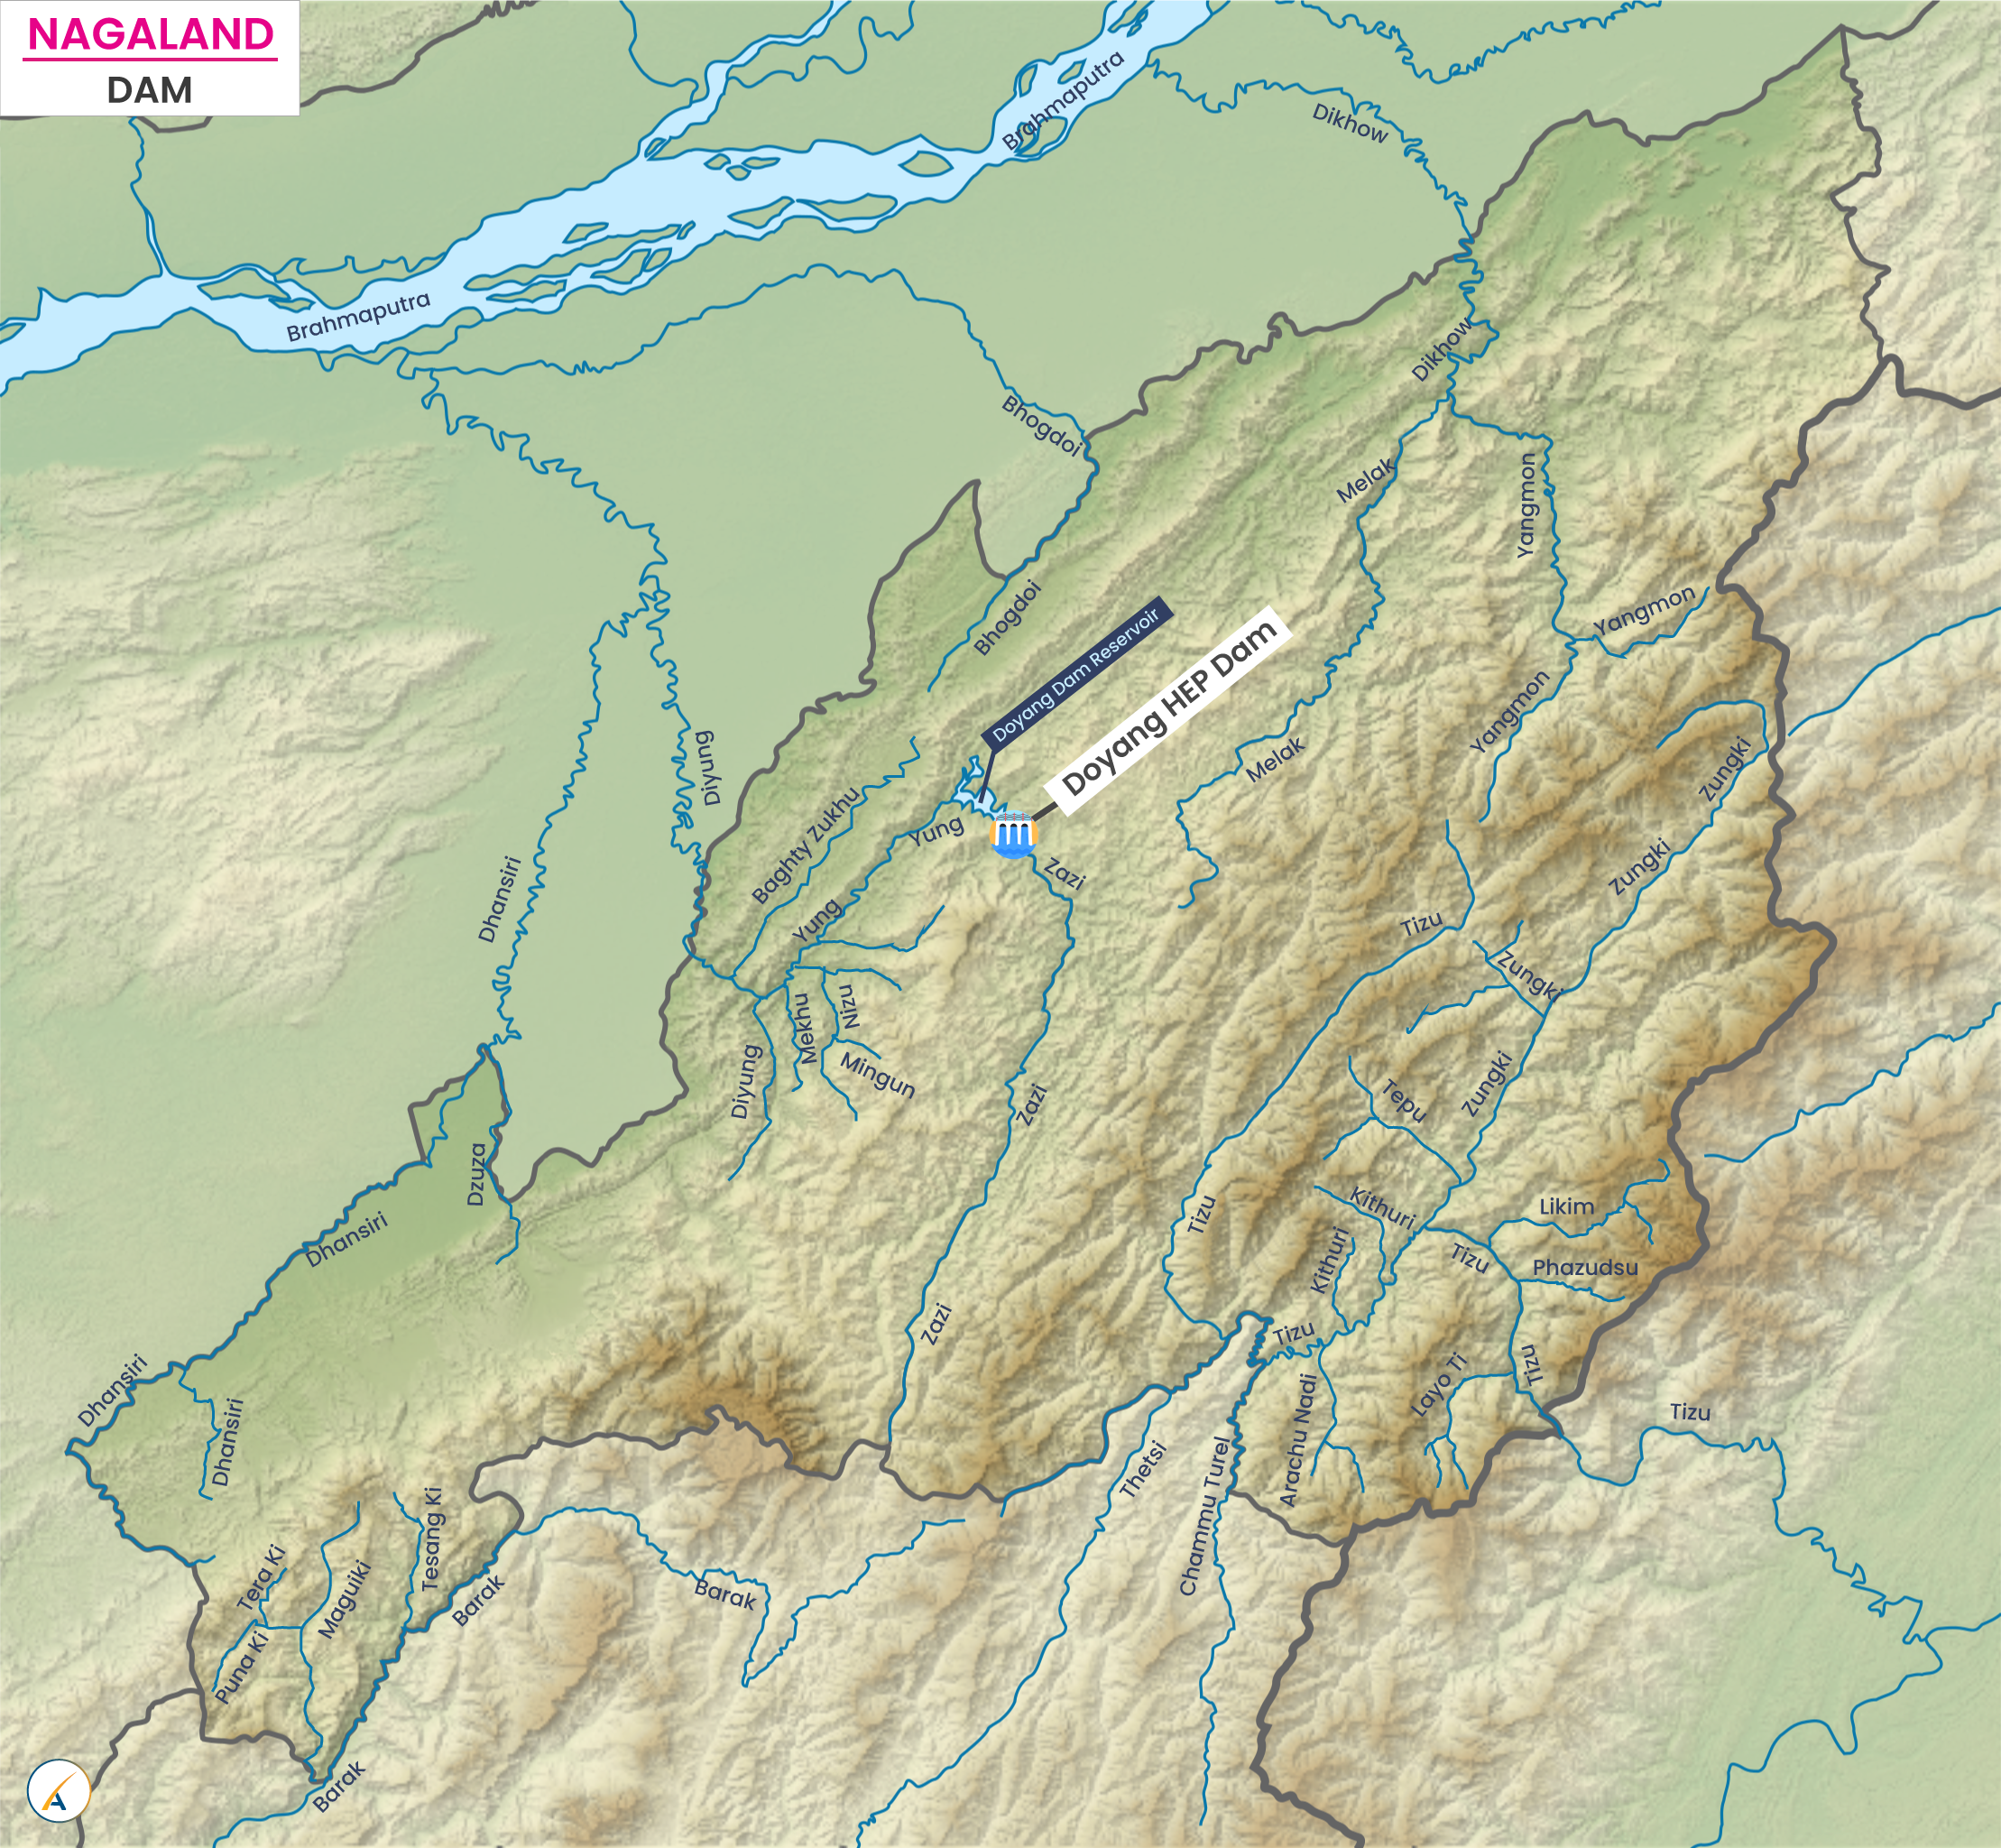 Major Dams in Nagaland (Map)